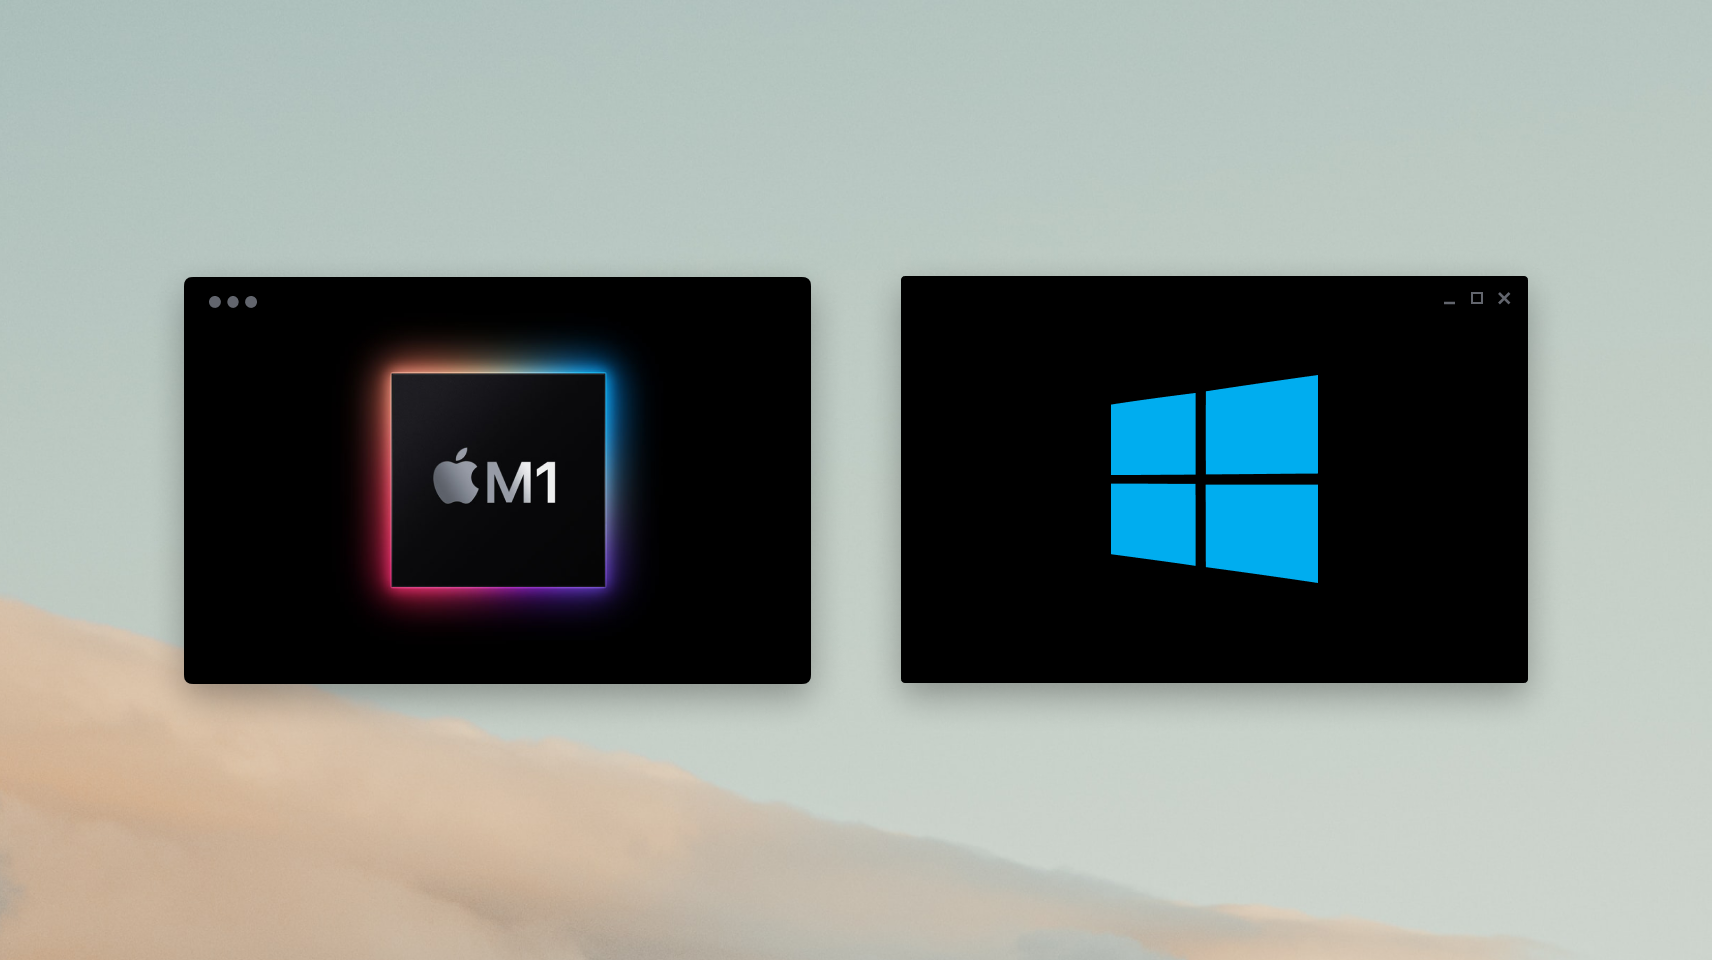 windows m1 mac